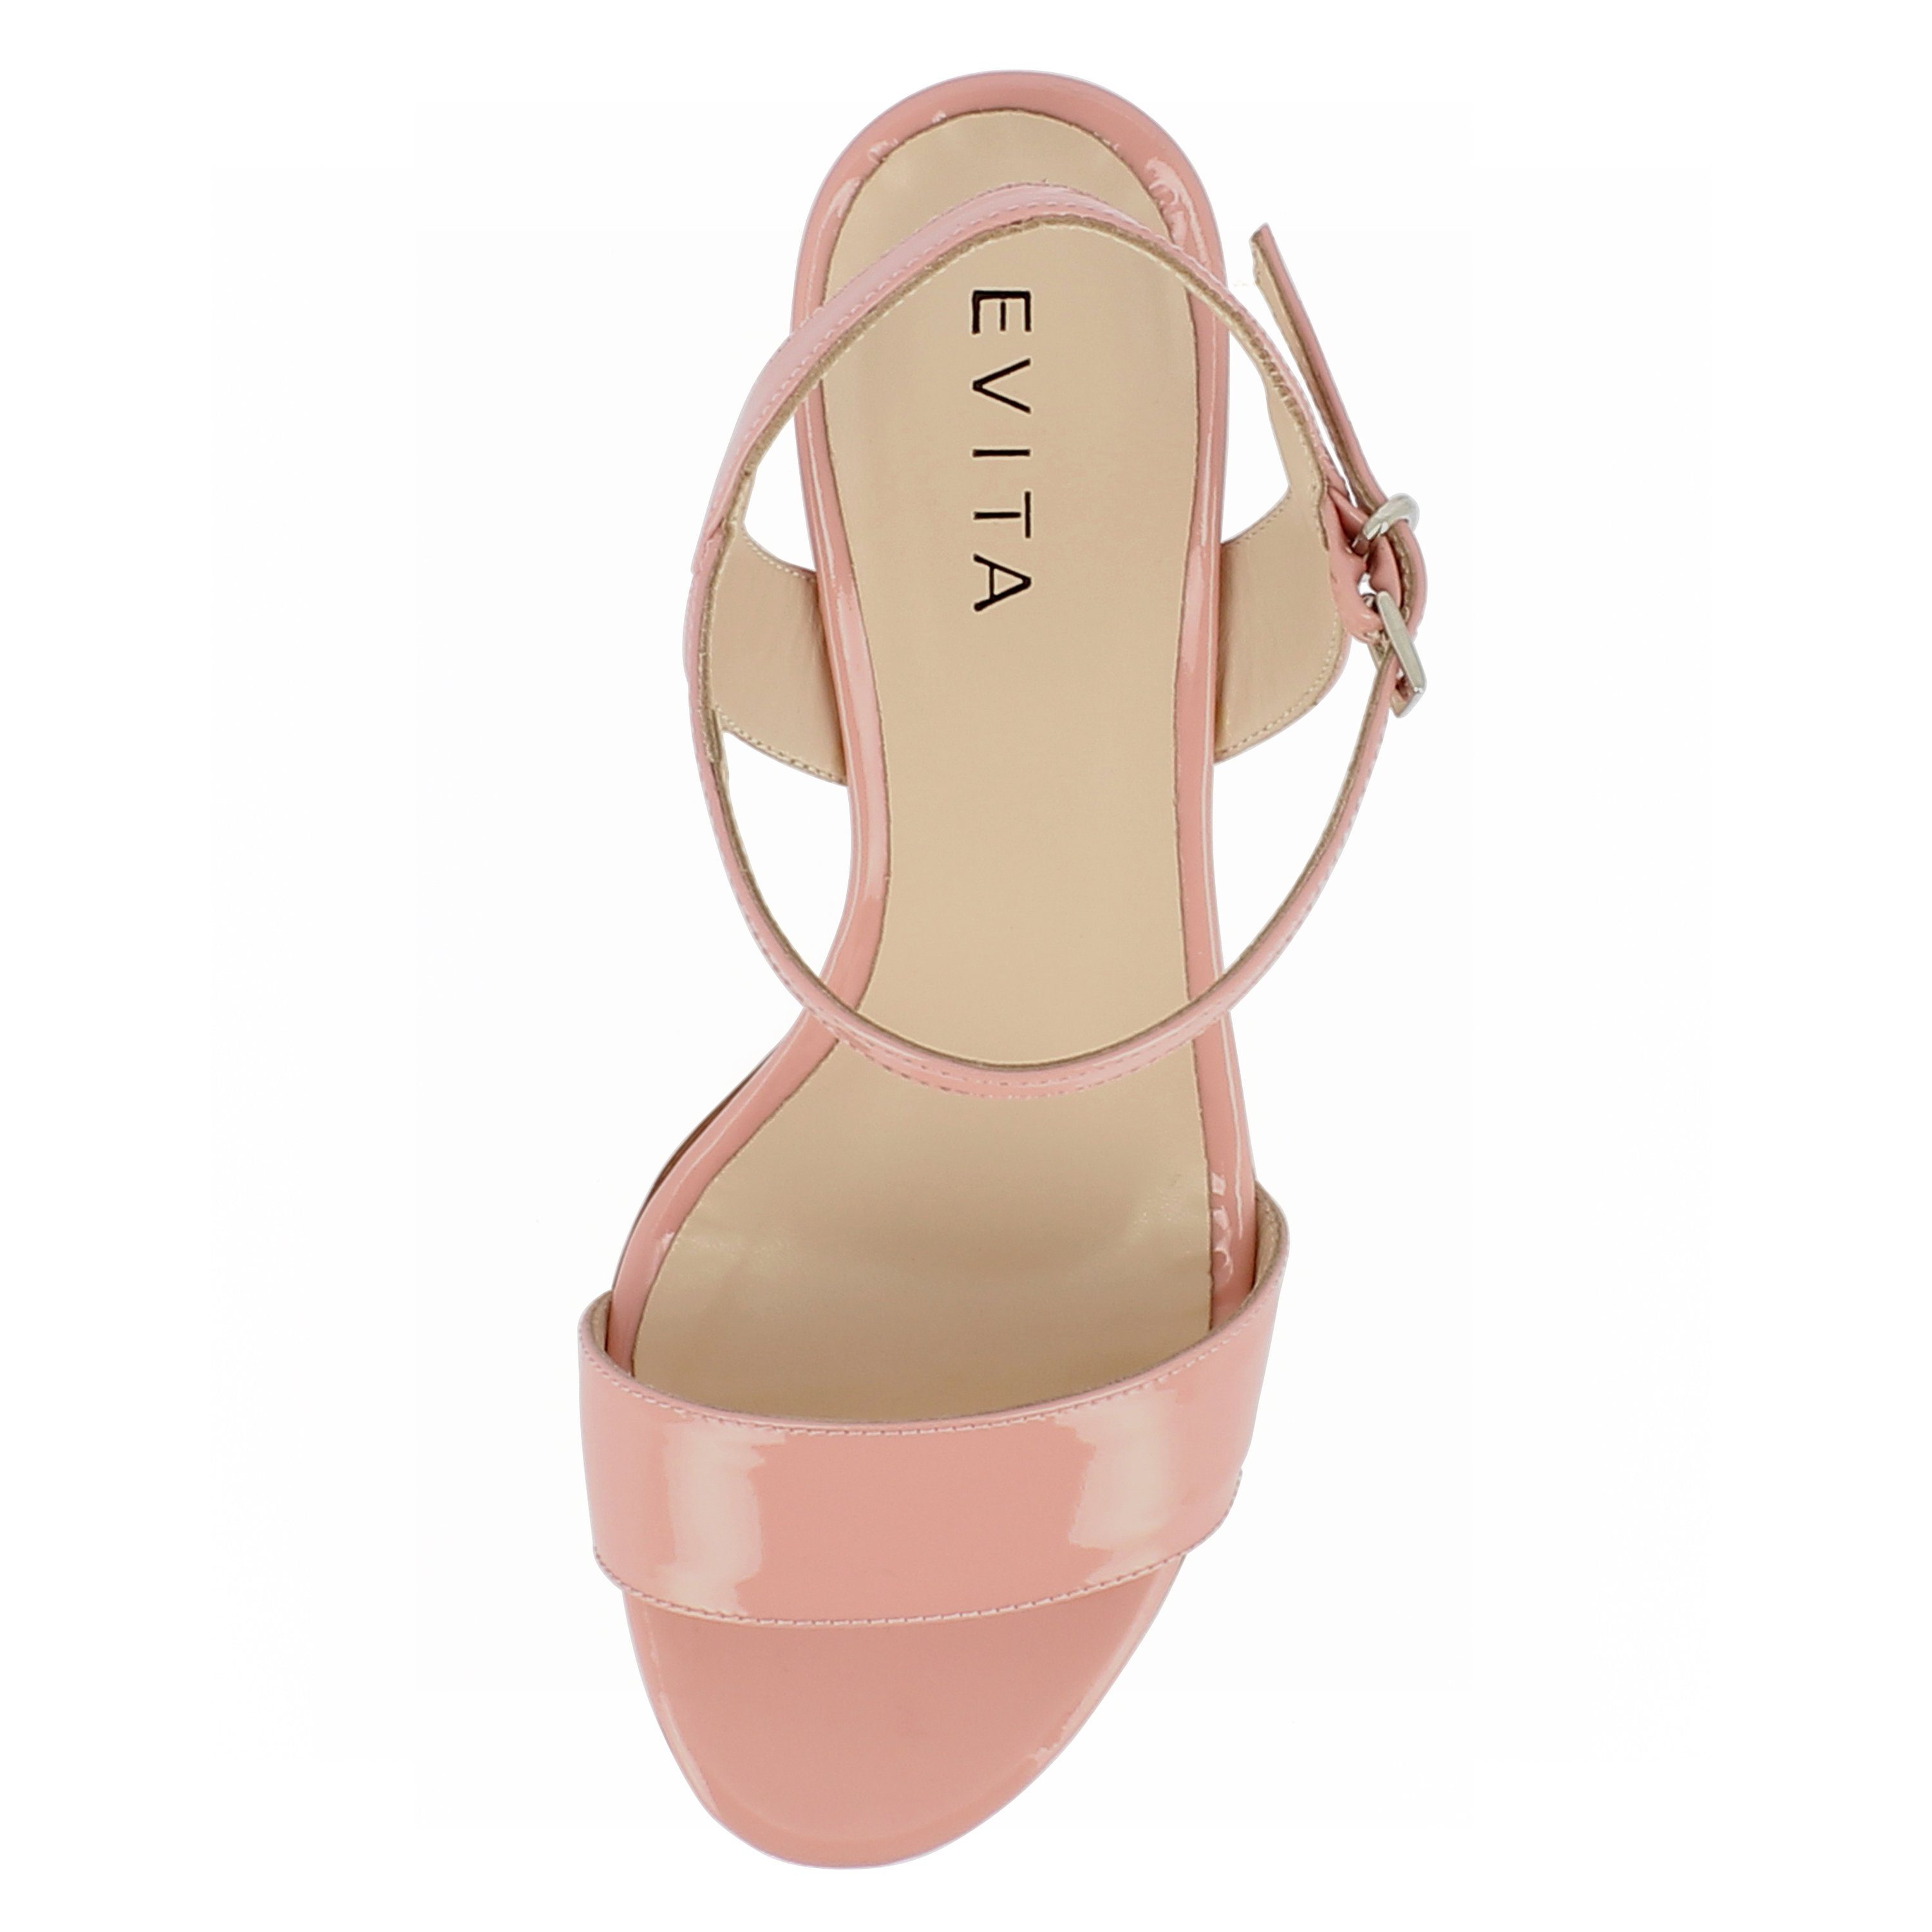 Sandalette AMBRA Evita rosa